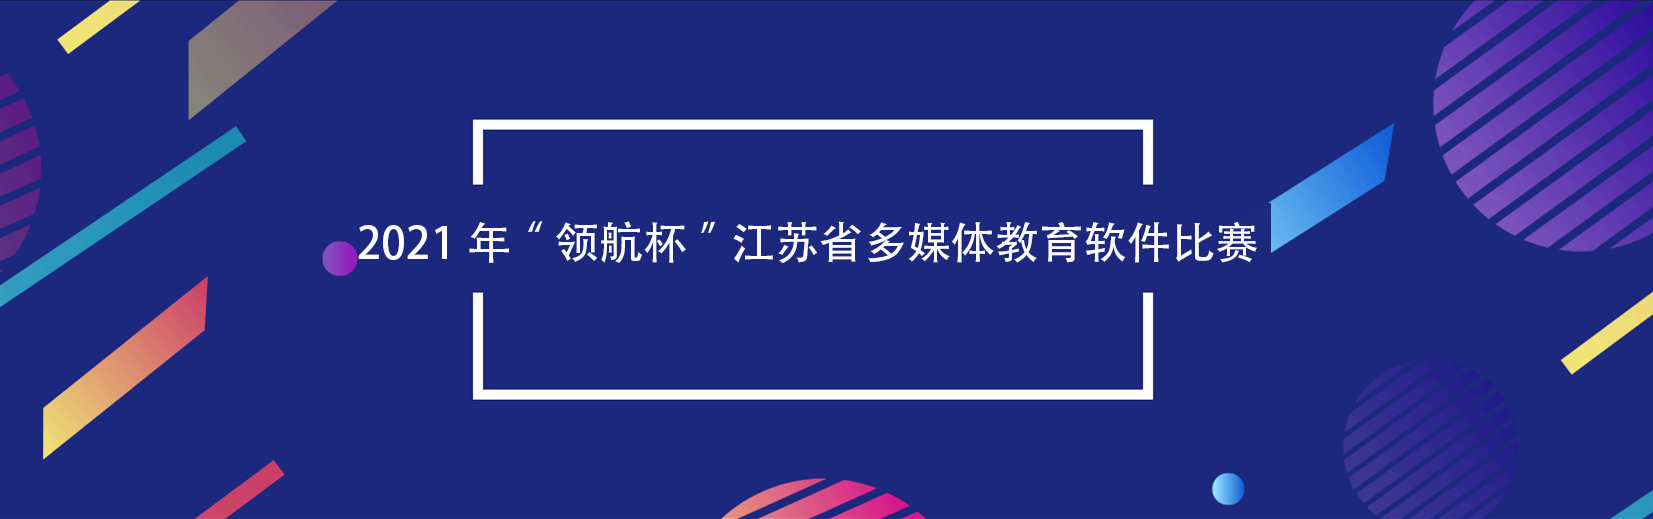 关于举办2021年“领航杯”江苏省多媒体教育软件比赛的通知